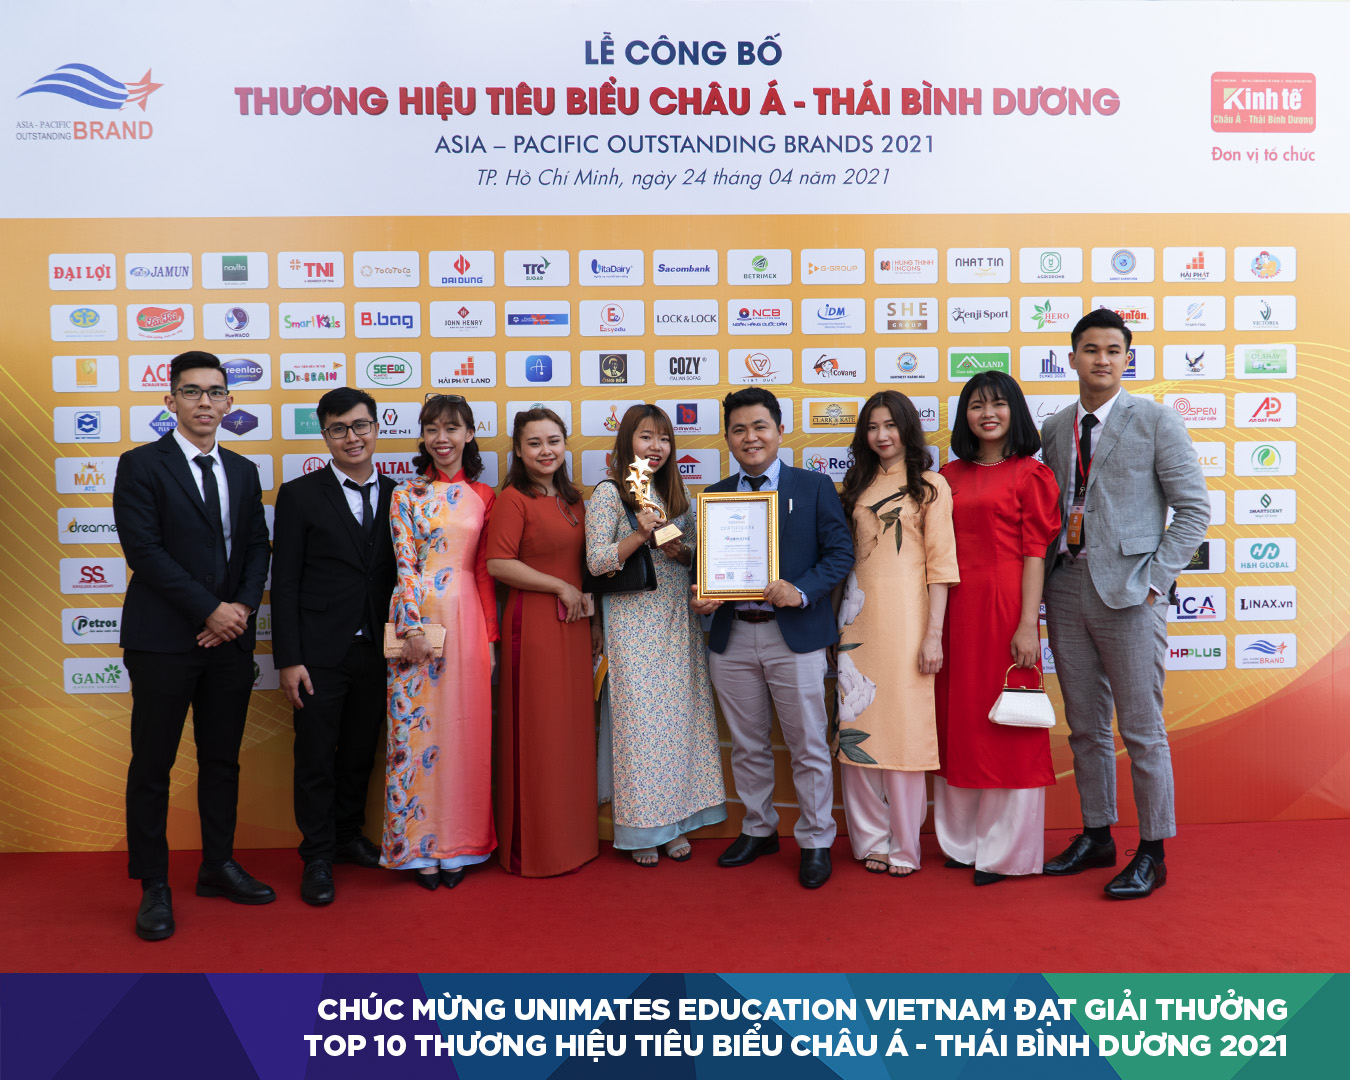 Đội ngũ UNIMATES trong lễ trao giải TOP 10 thương hiệu tiêu biểu châu Á - Thái Bình Dương 2021 